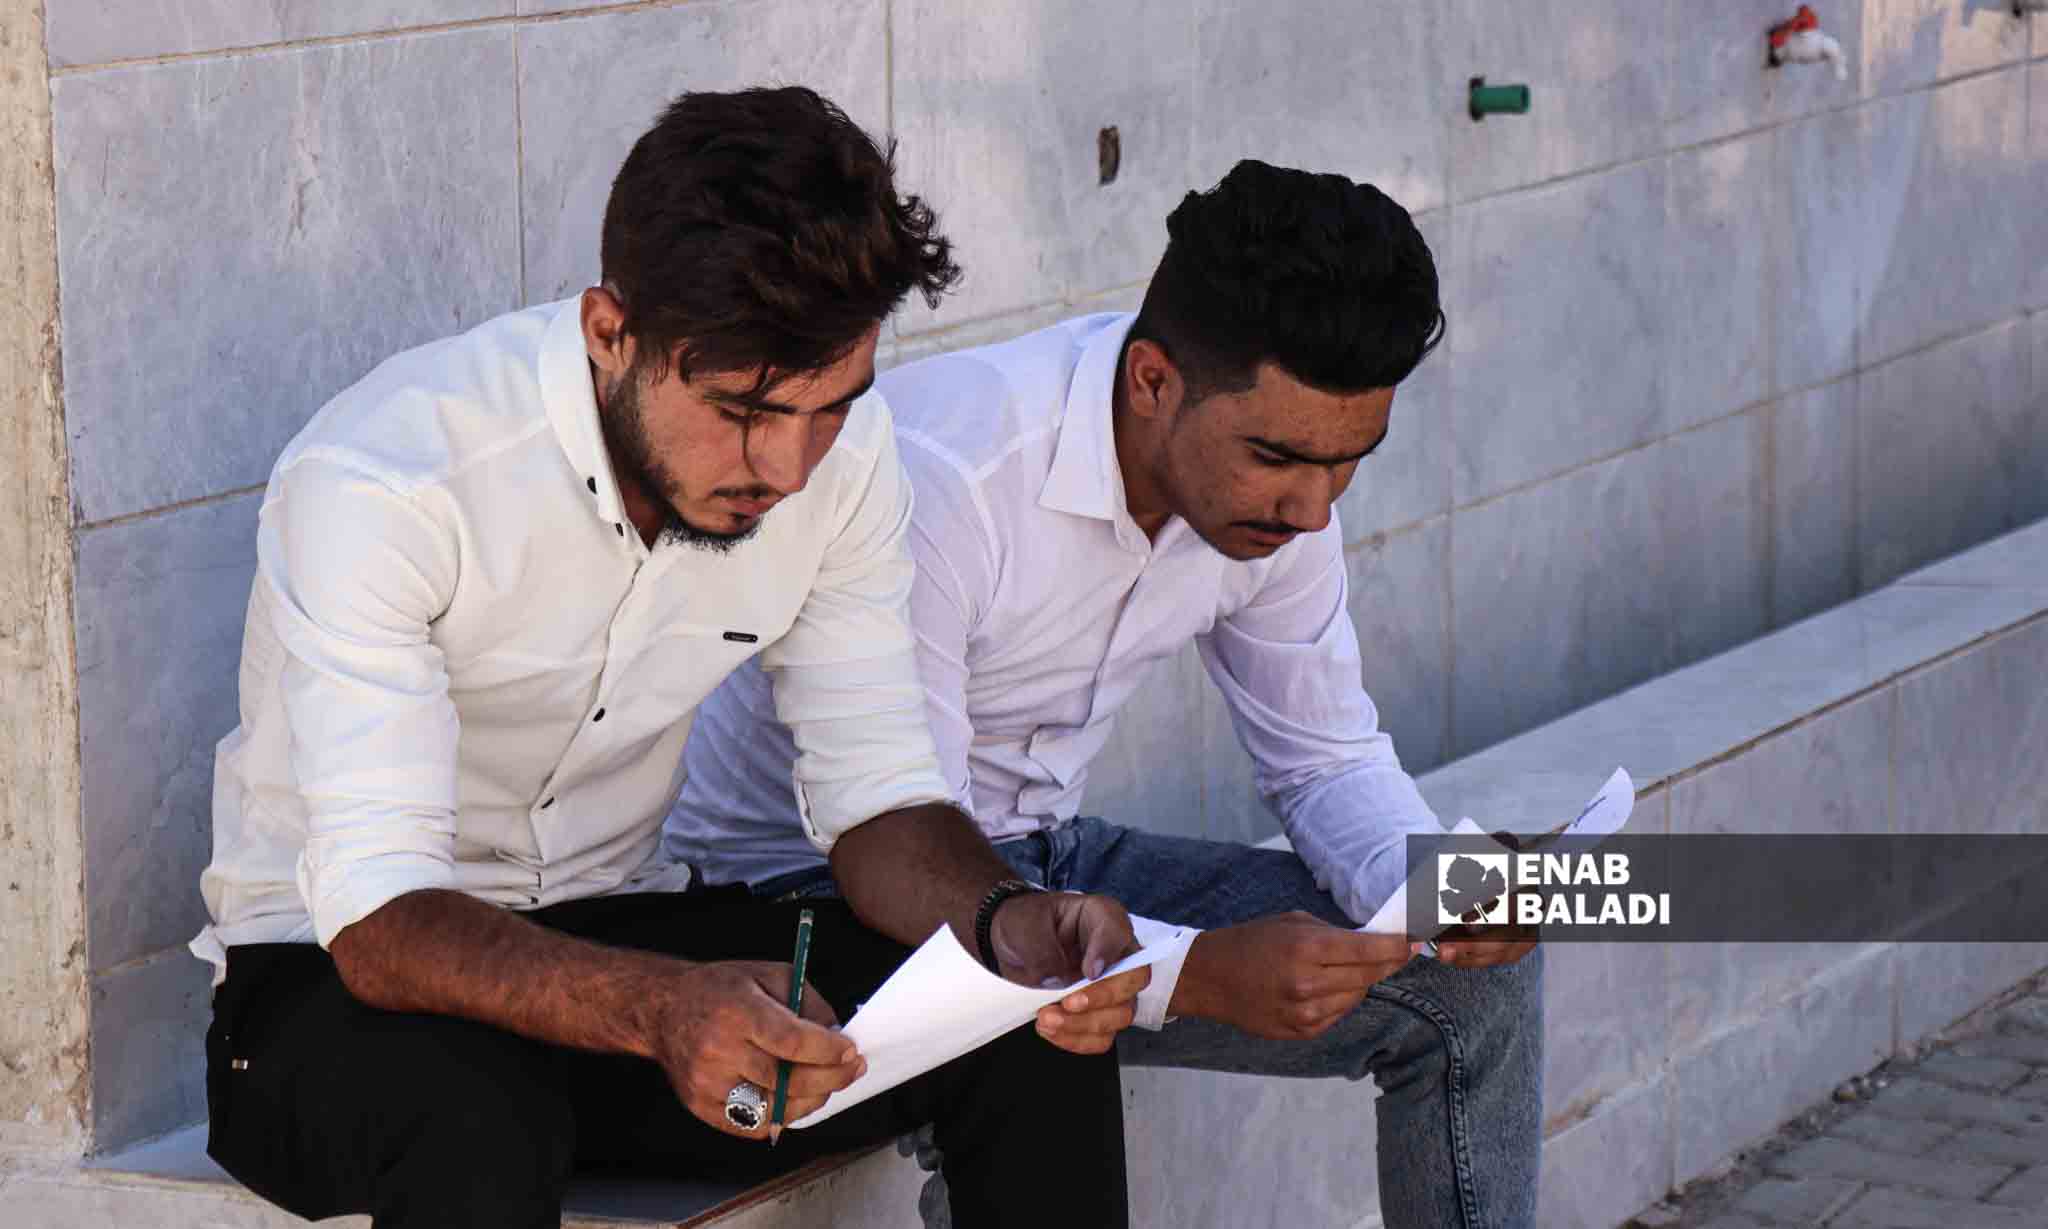 طالبان يراجعان معلوماتهم قبل الدخول لقاعة الامتحان - 5 من تموز 2023 (/ حسين شعبو)